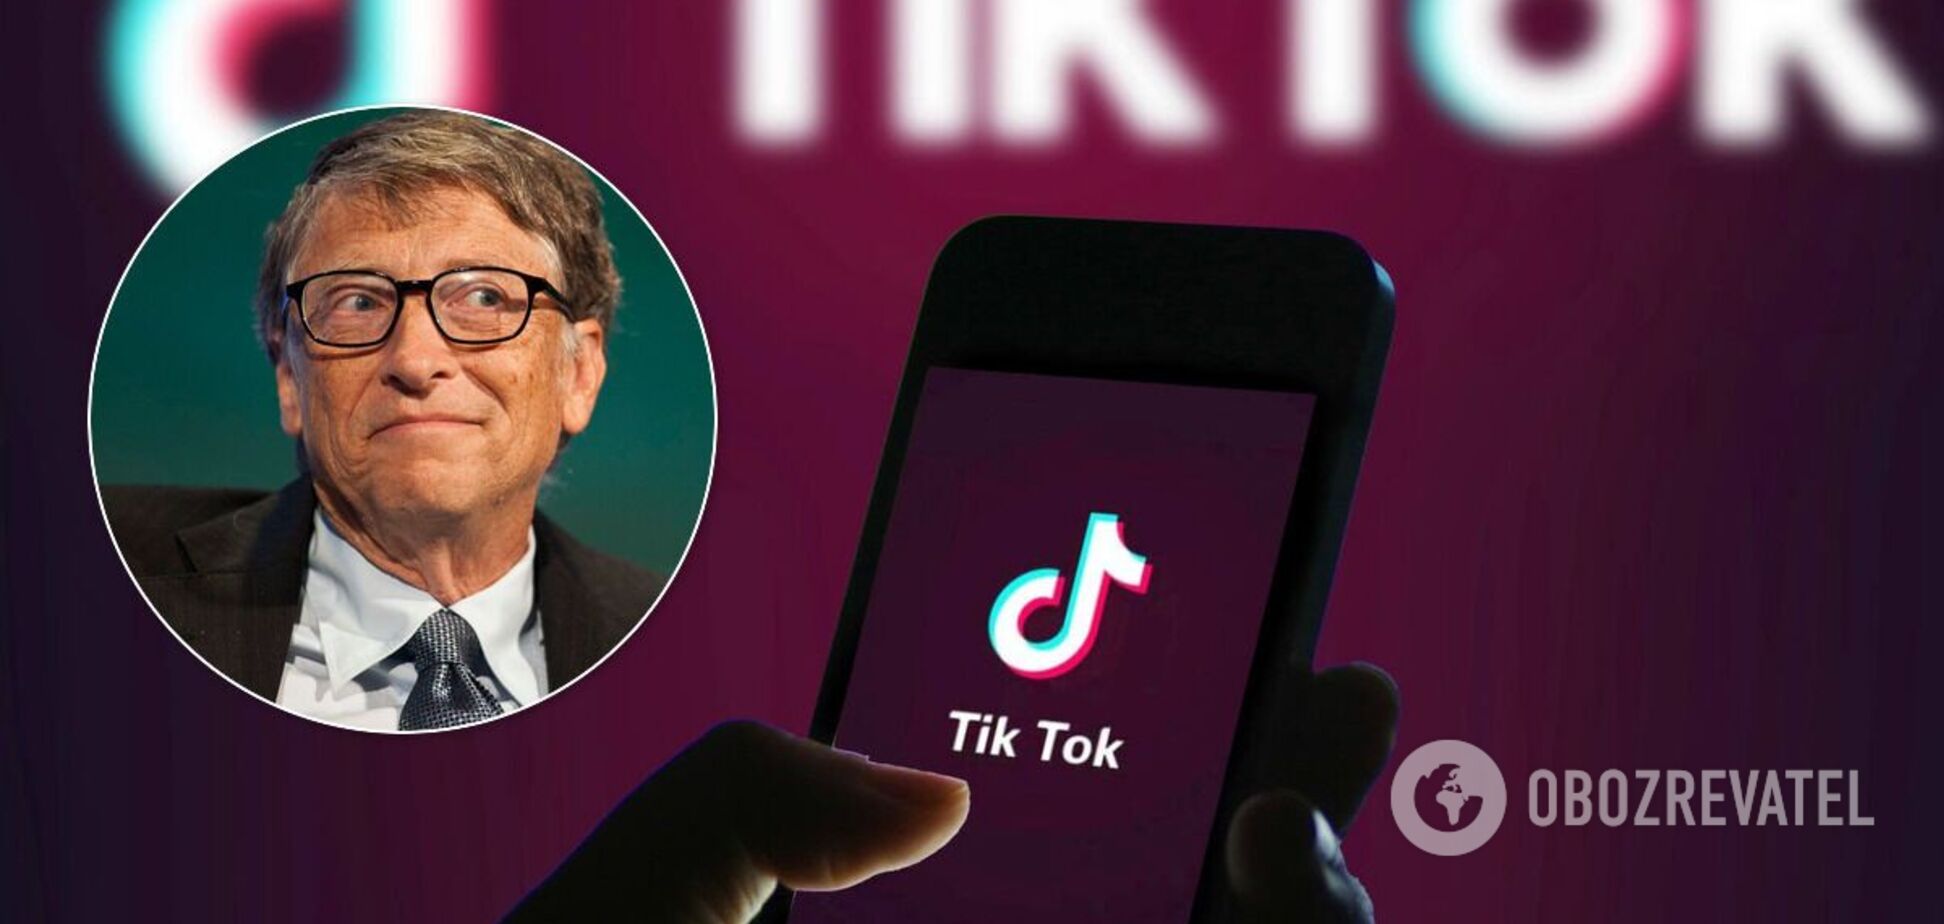 Microsoft намерена купить TikTok и спасти от закрытия в США: СМИ узнали сумму сделки